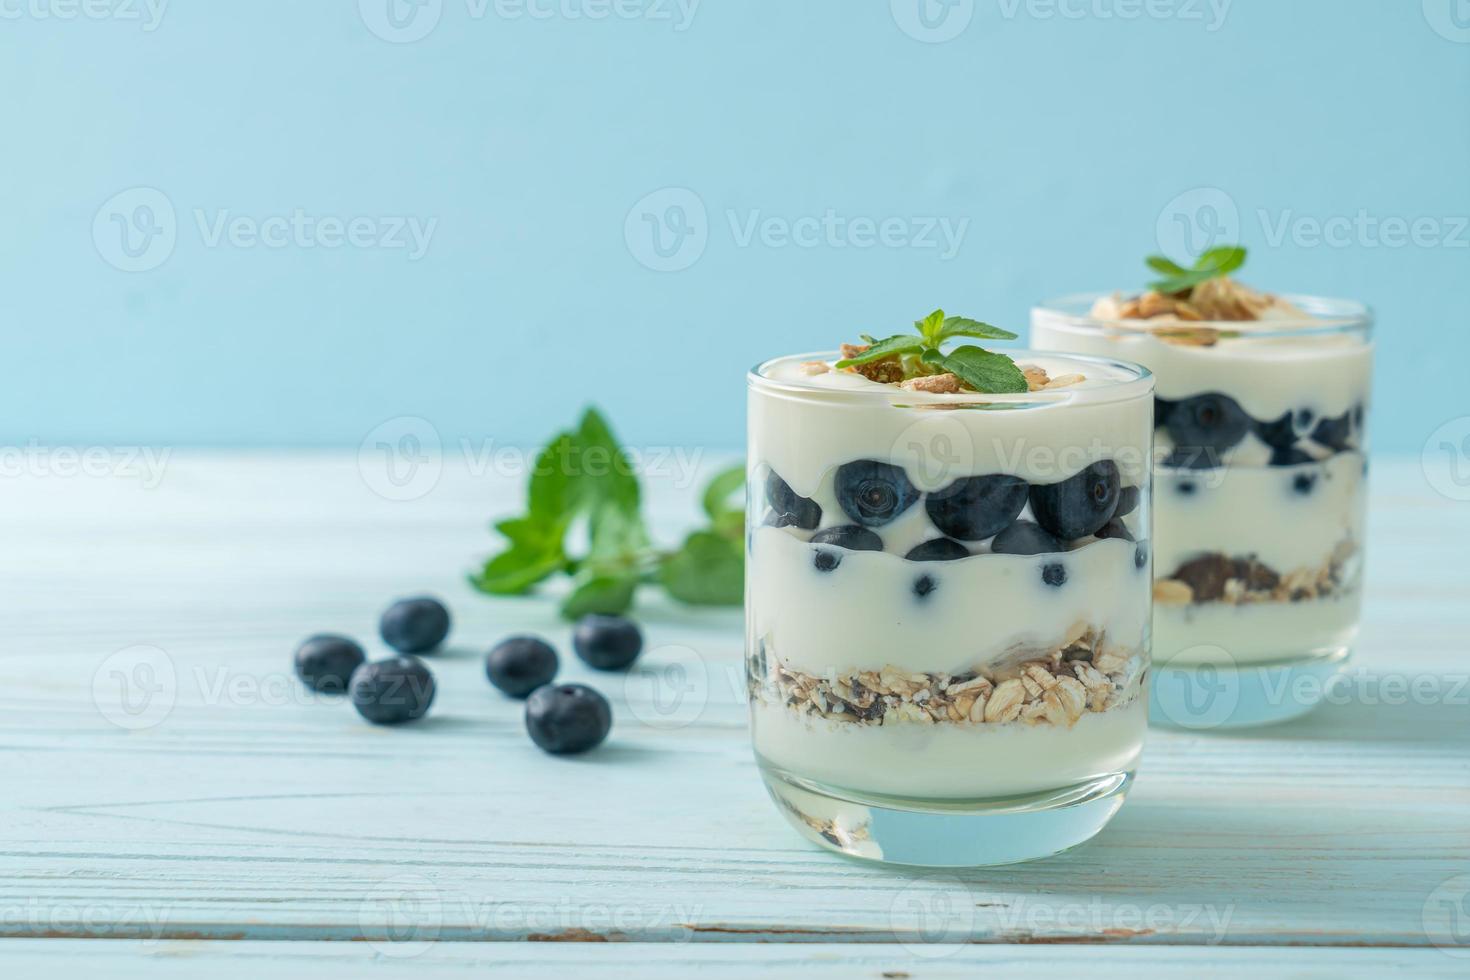 frische Blaubeeren und Joghurt mit Müsli - gesunder Ernährungsstil foto